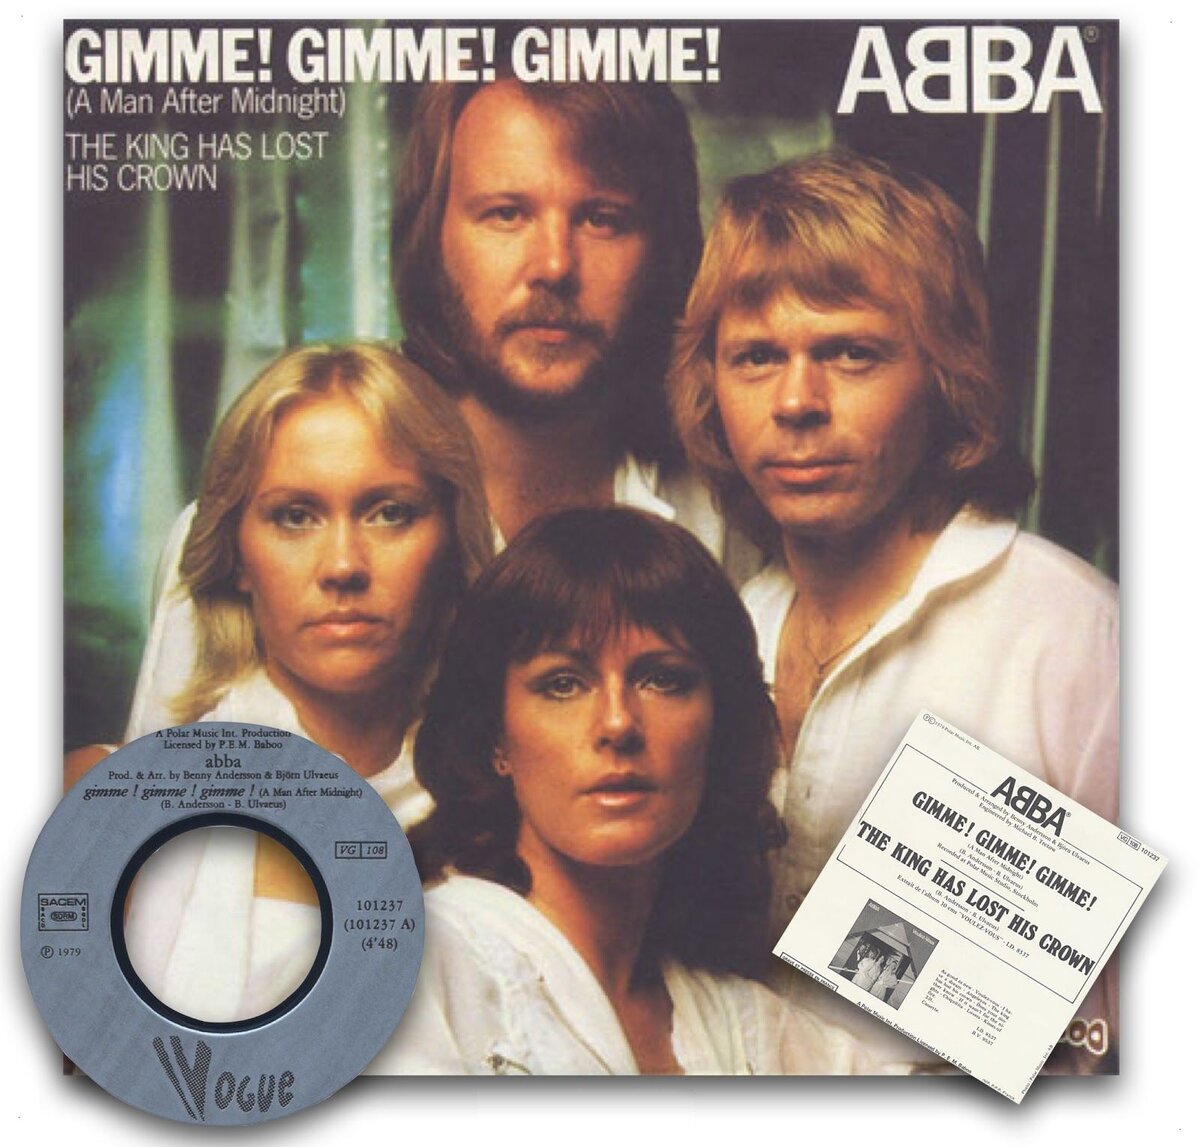 ABBA Gimme обложка. ABBA A man after Midnight. ABBA Gimme Gimme Gimme. ABBA - Gimme! Gimme! Gimme! (A man after Midnight).